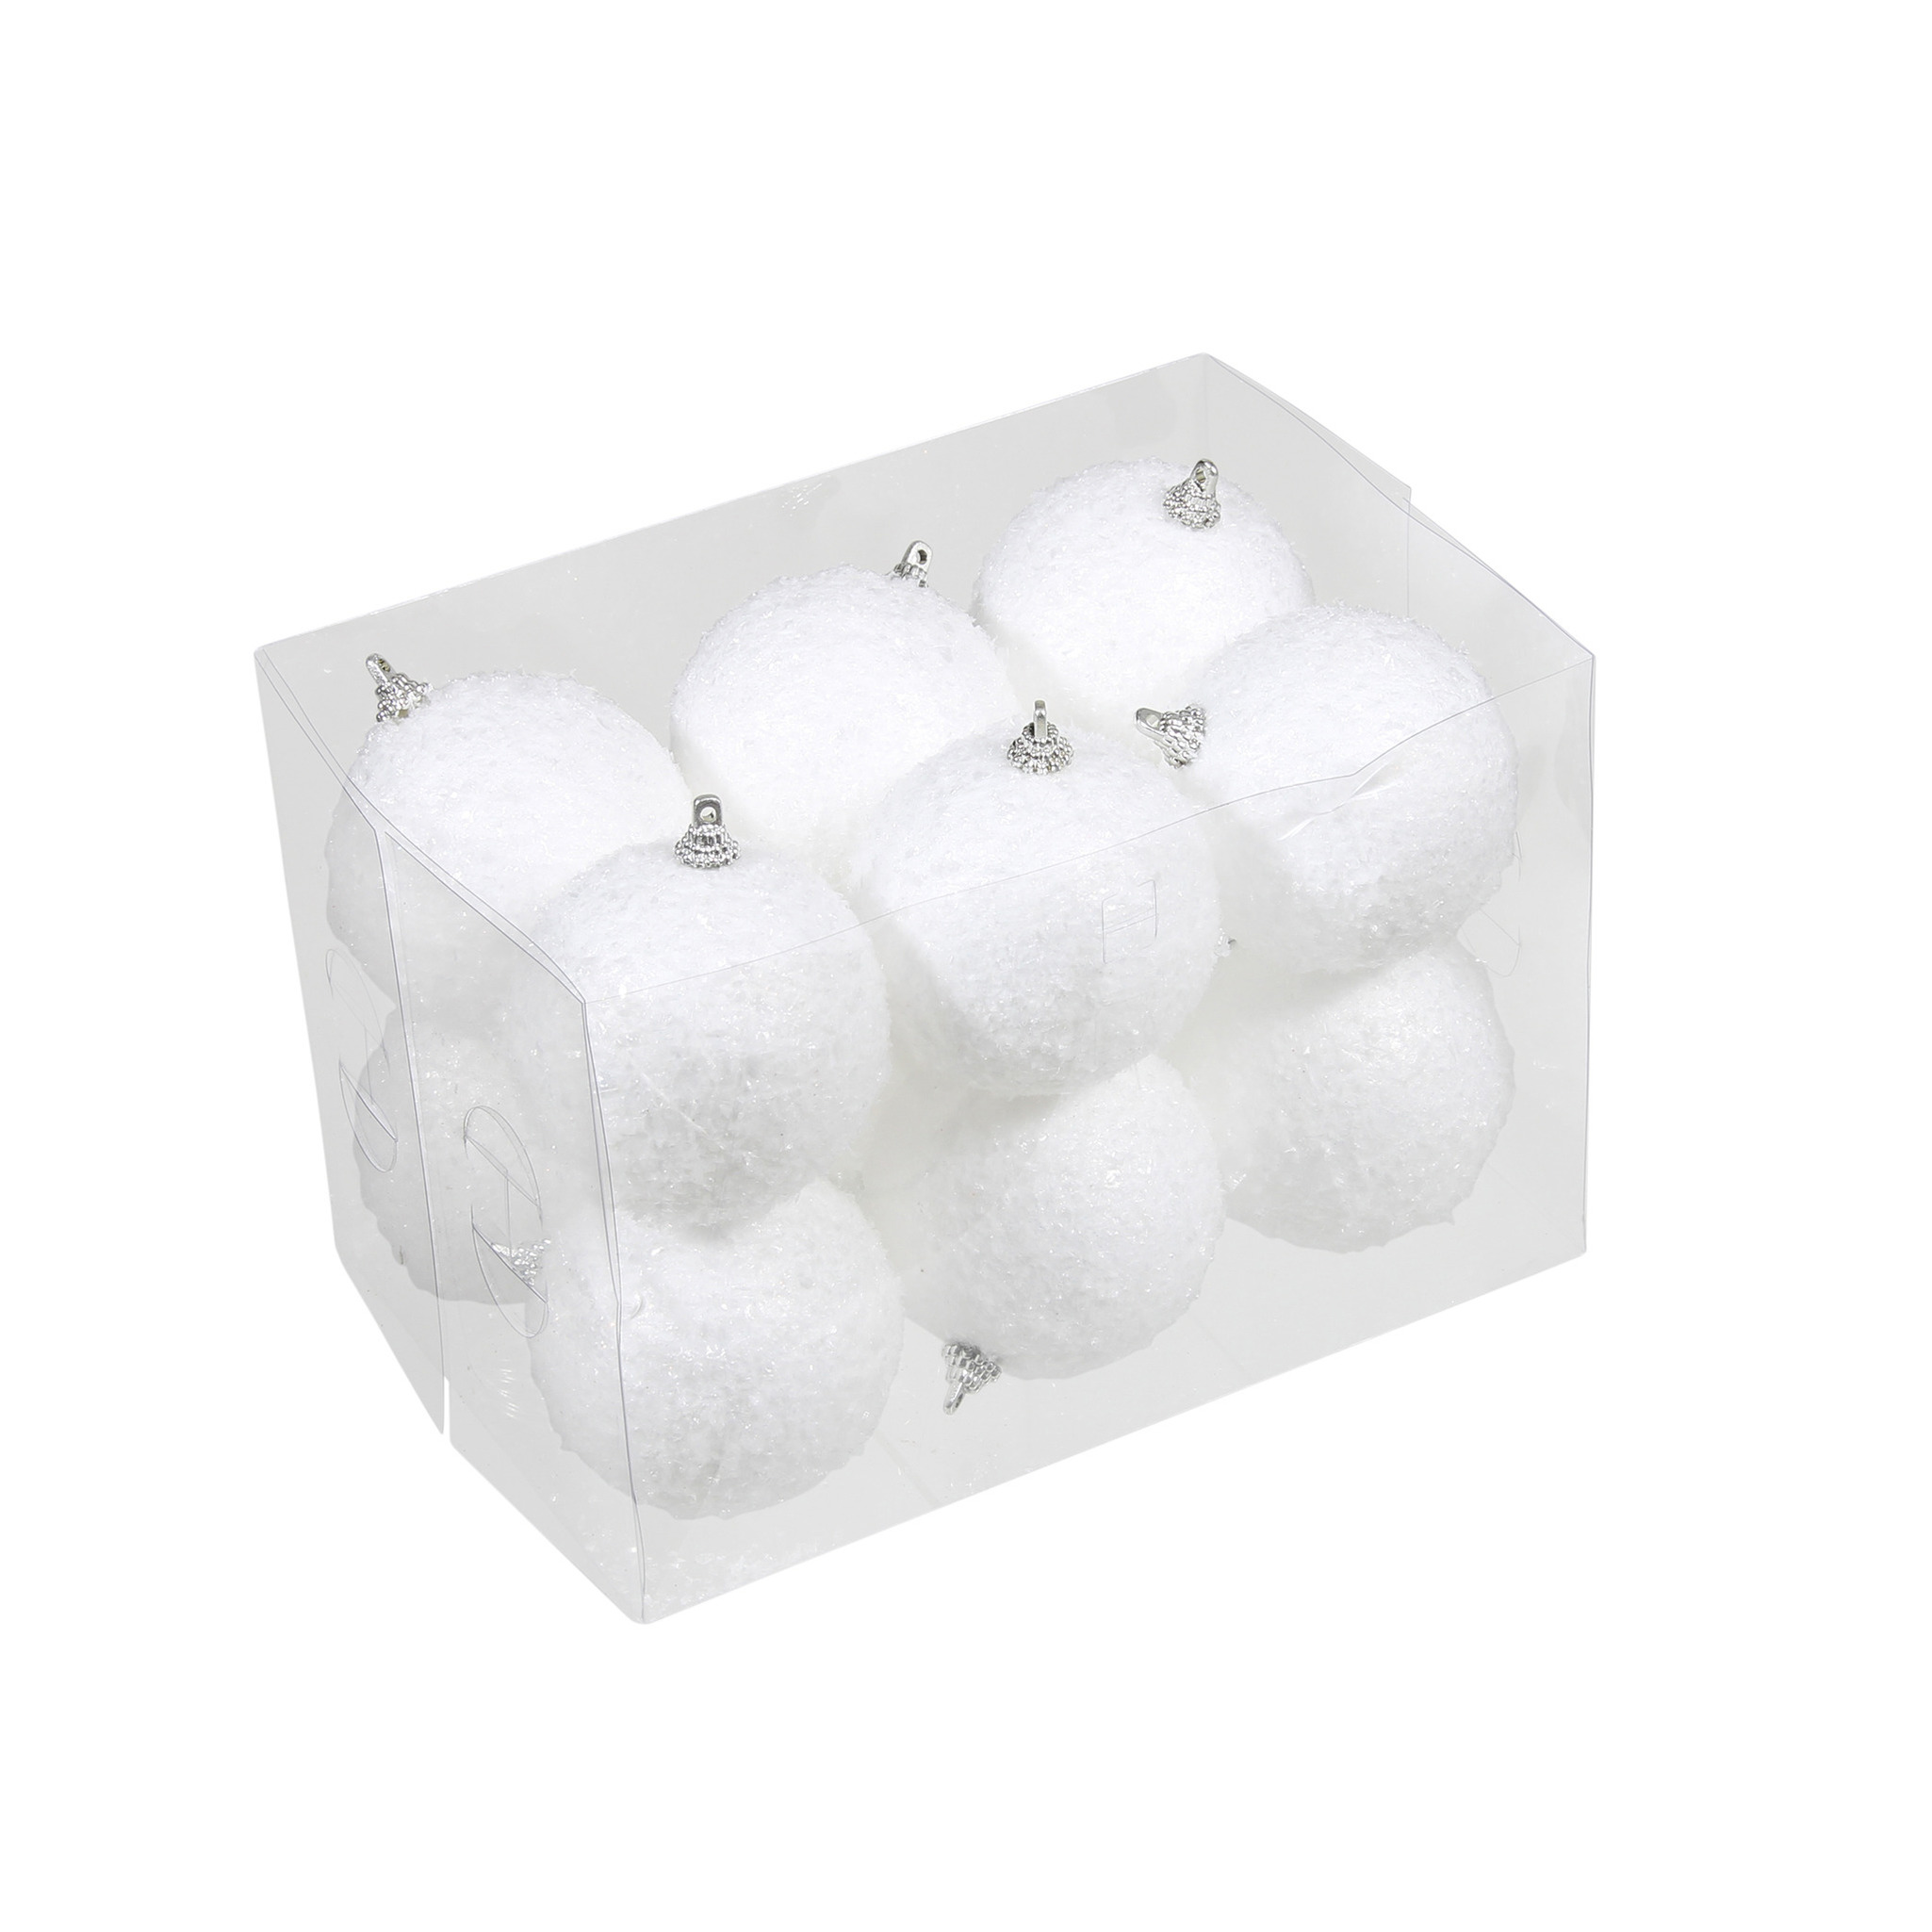 12x Kleine kunststof kerstballen met sneeuw effect wit 7 cm